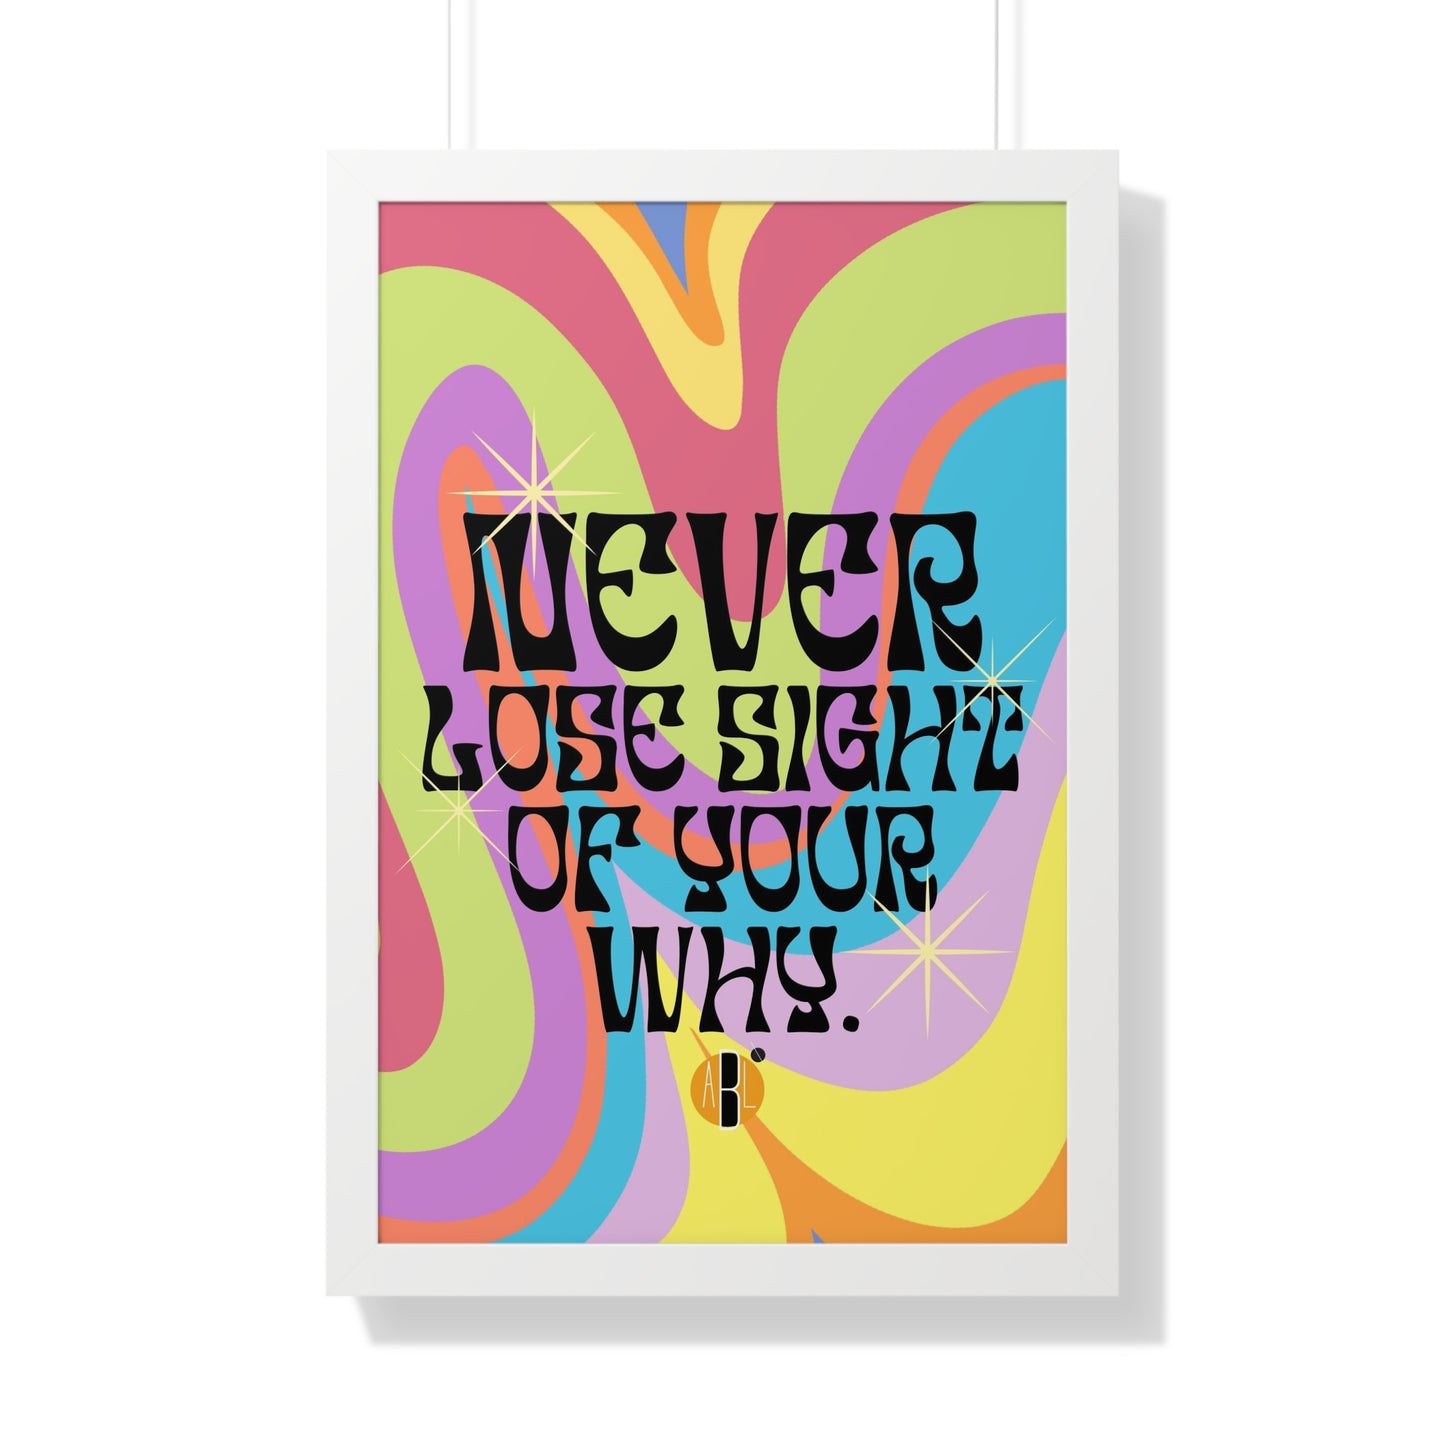 ABL Inspirational Framed Vertical Poster: " Never Lose.."